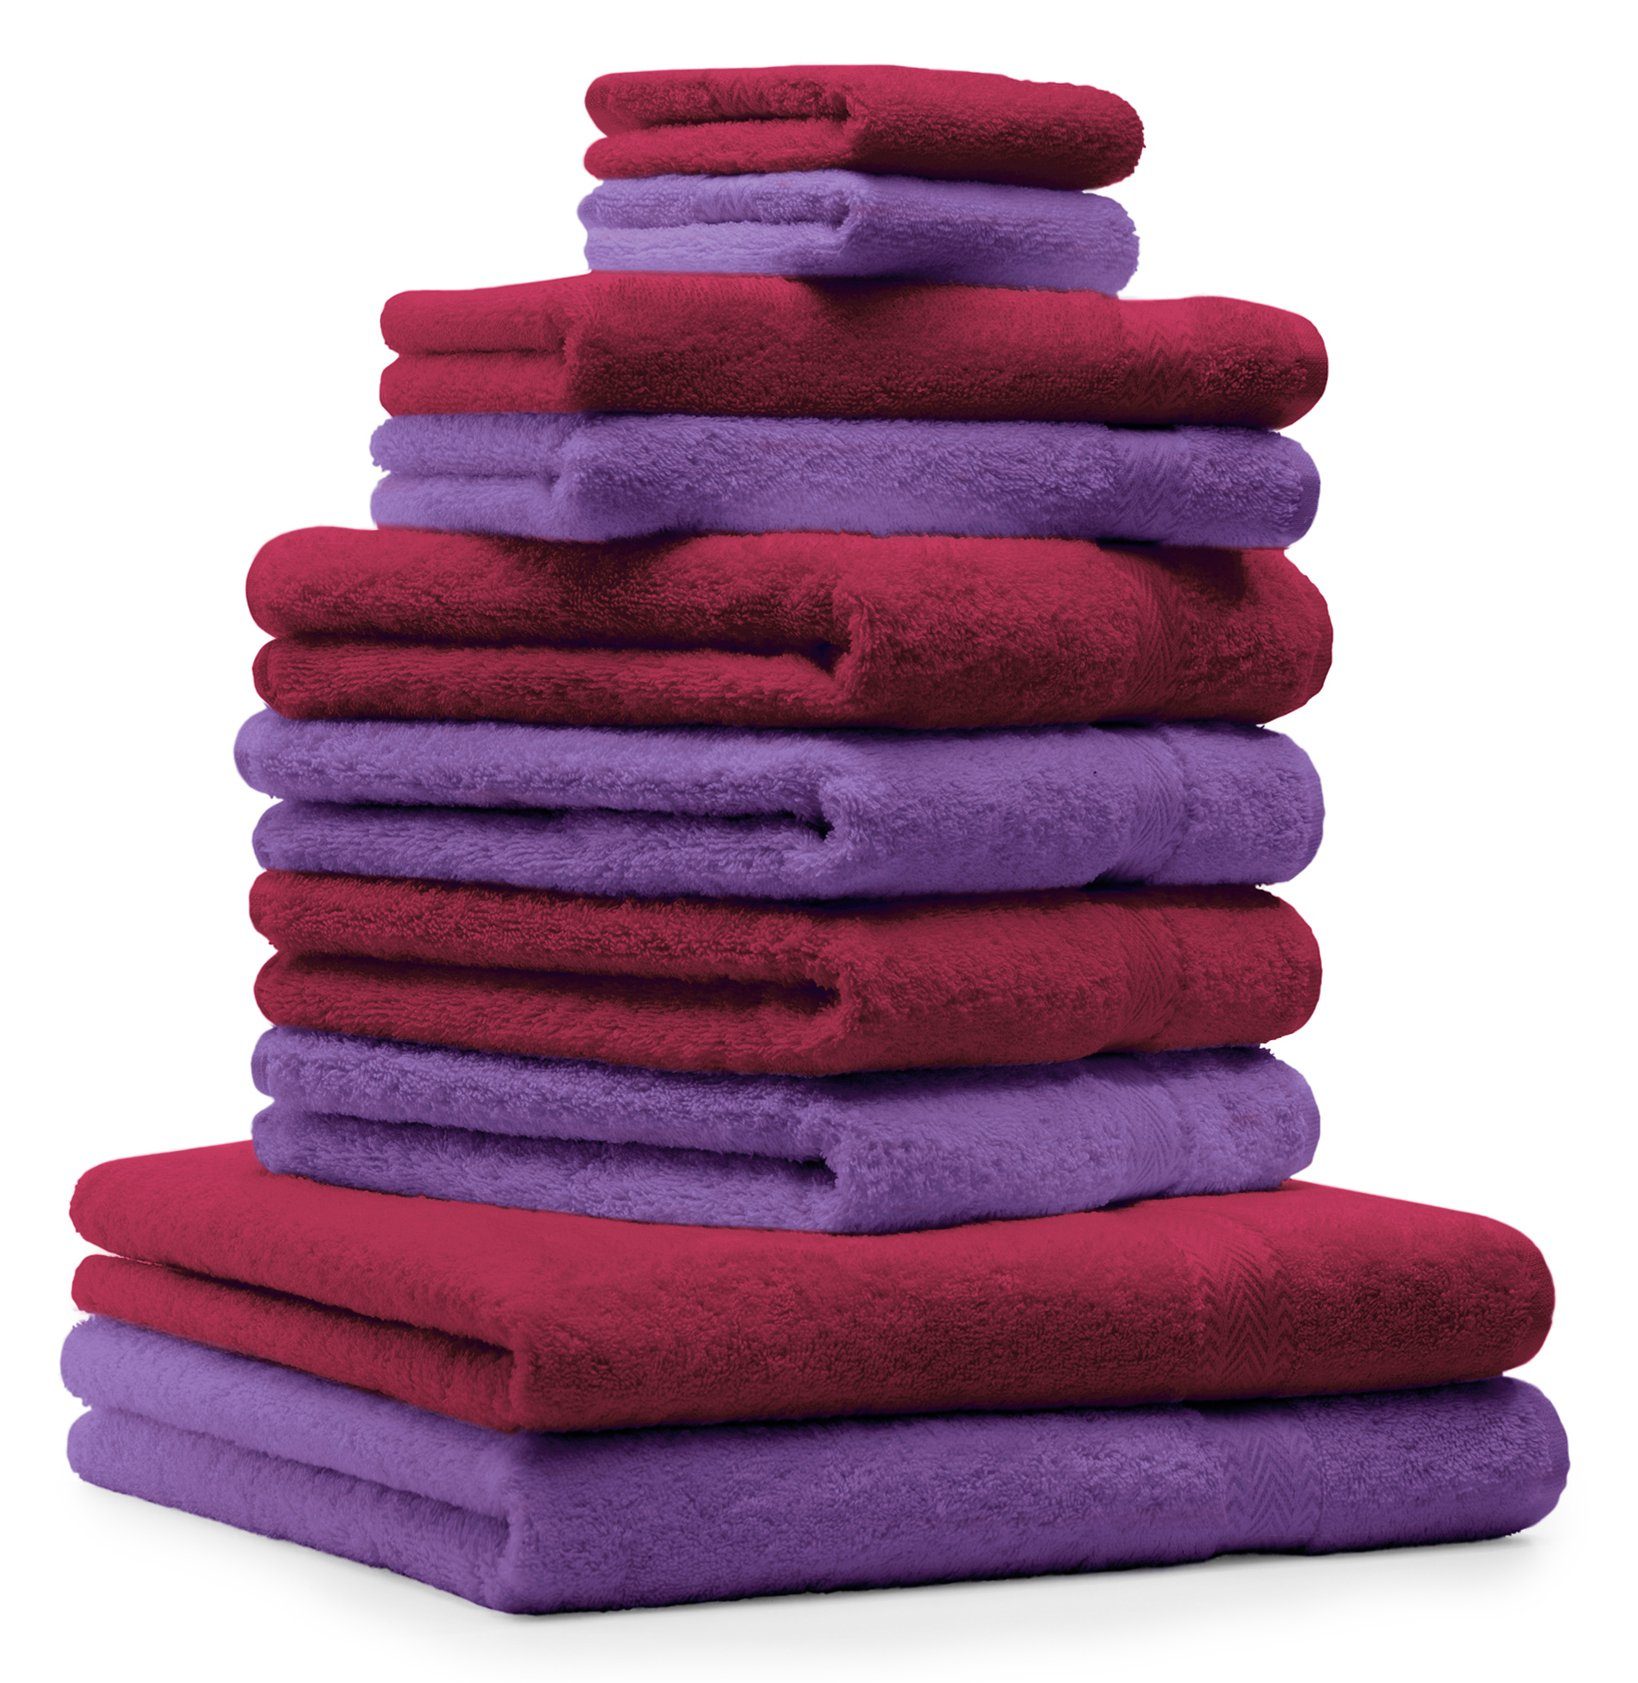 und 10-TLG. Handtuch-Set Baumwolle lila, Betz dunkelrot 100% Set 100% Handtuch Baumwolle Classic